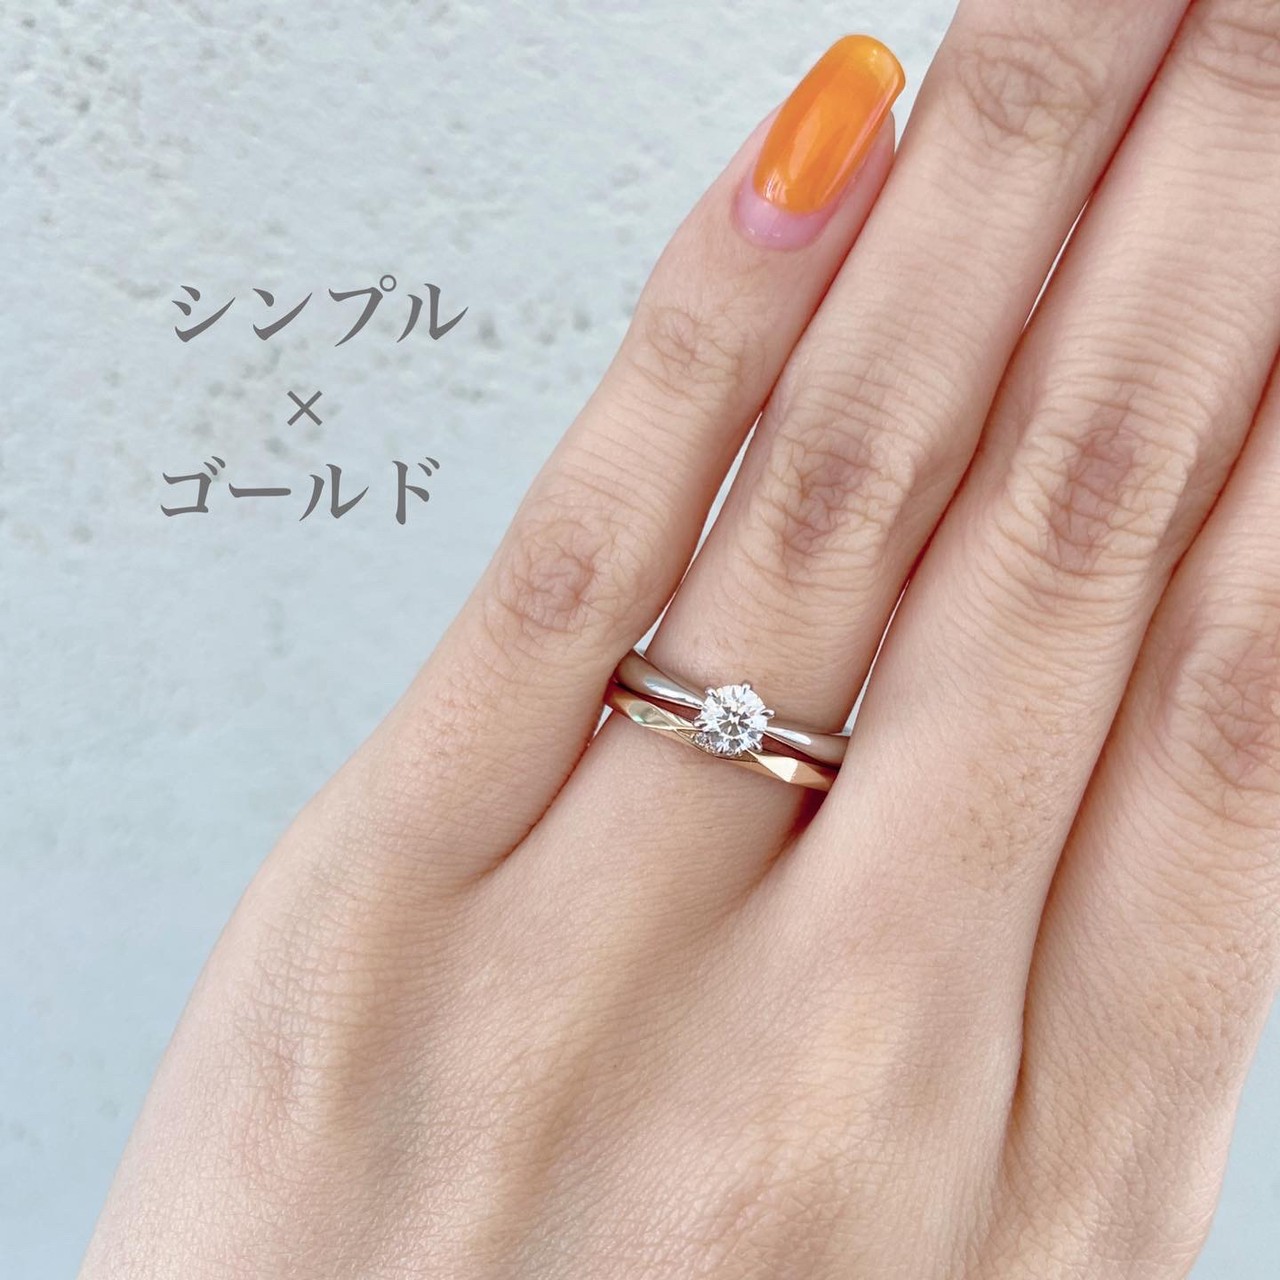 シンプルなプロポーズリングとゴールド婚約指輪（マリッジリング）のかさねづけはオシャレでかわいい